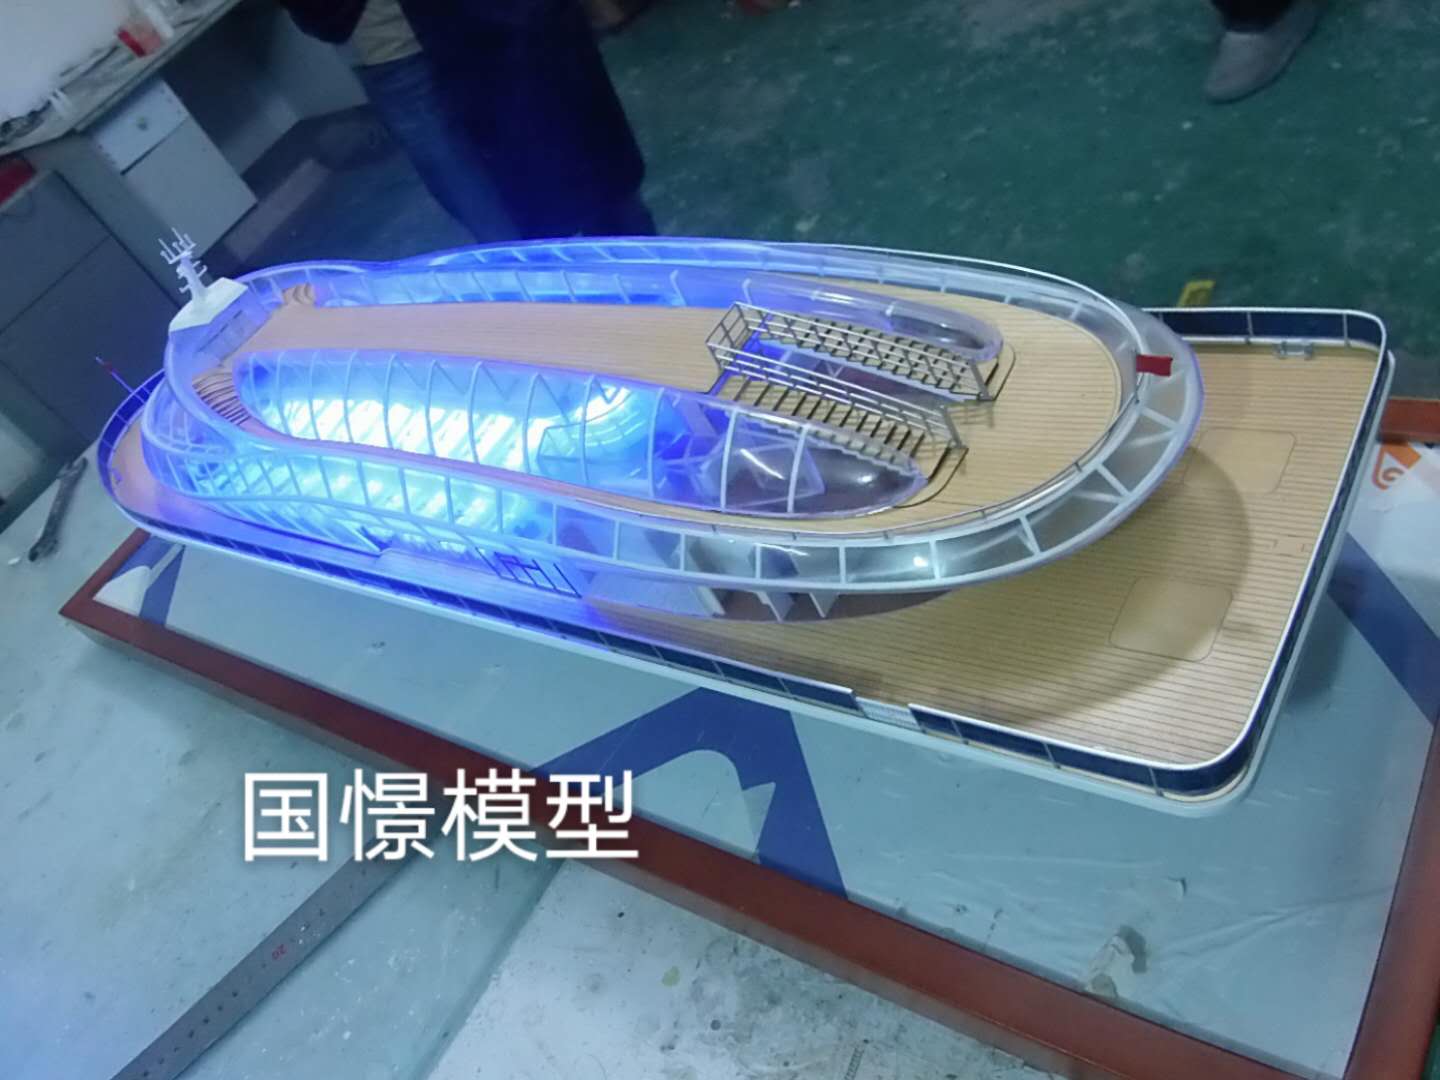 兴海县船舶模型